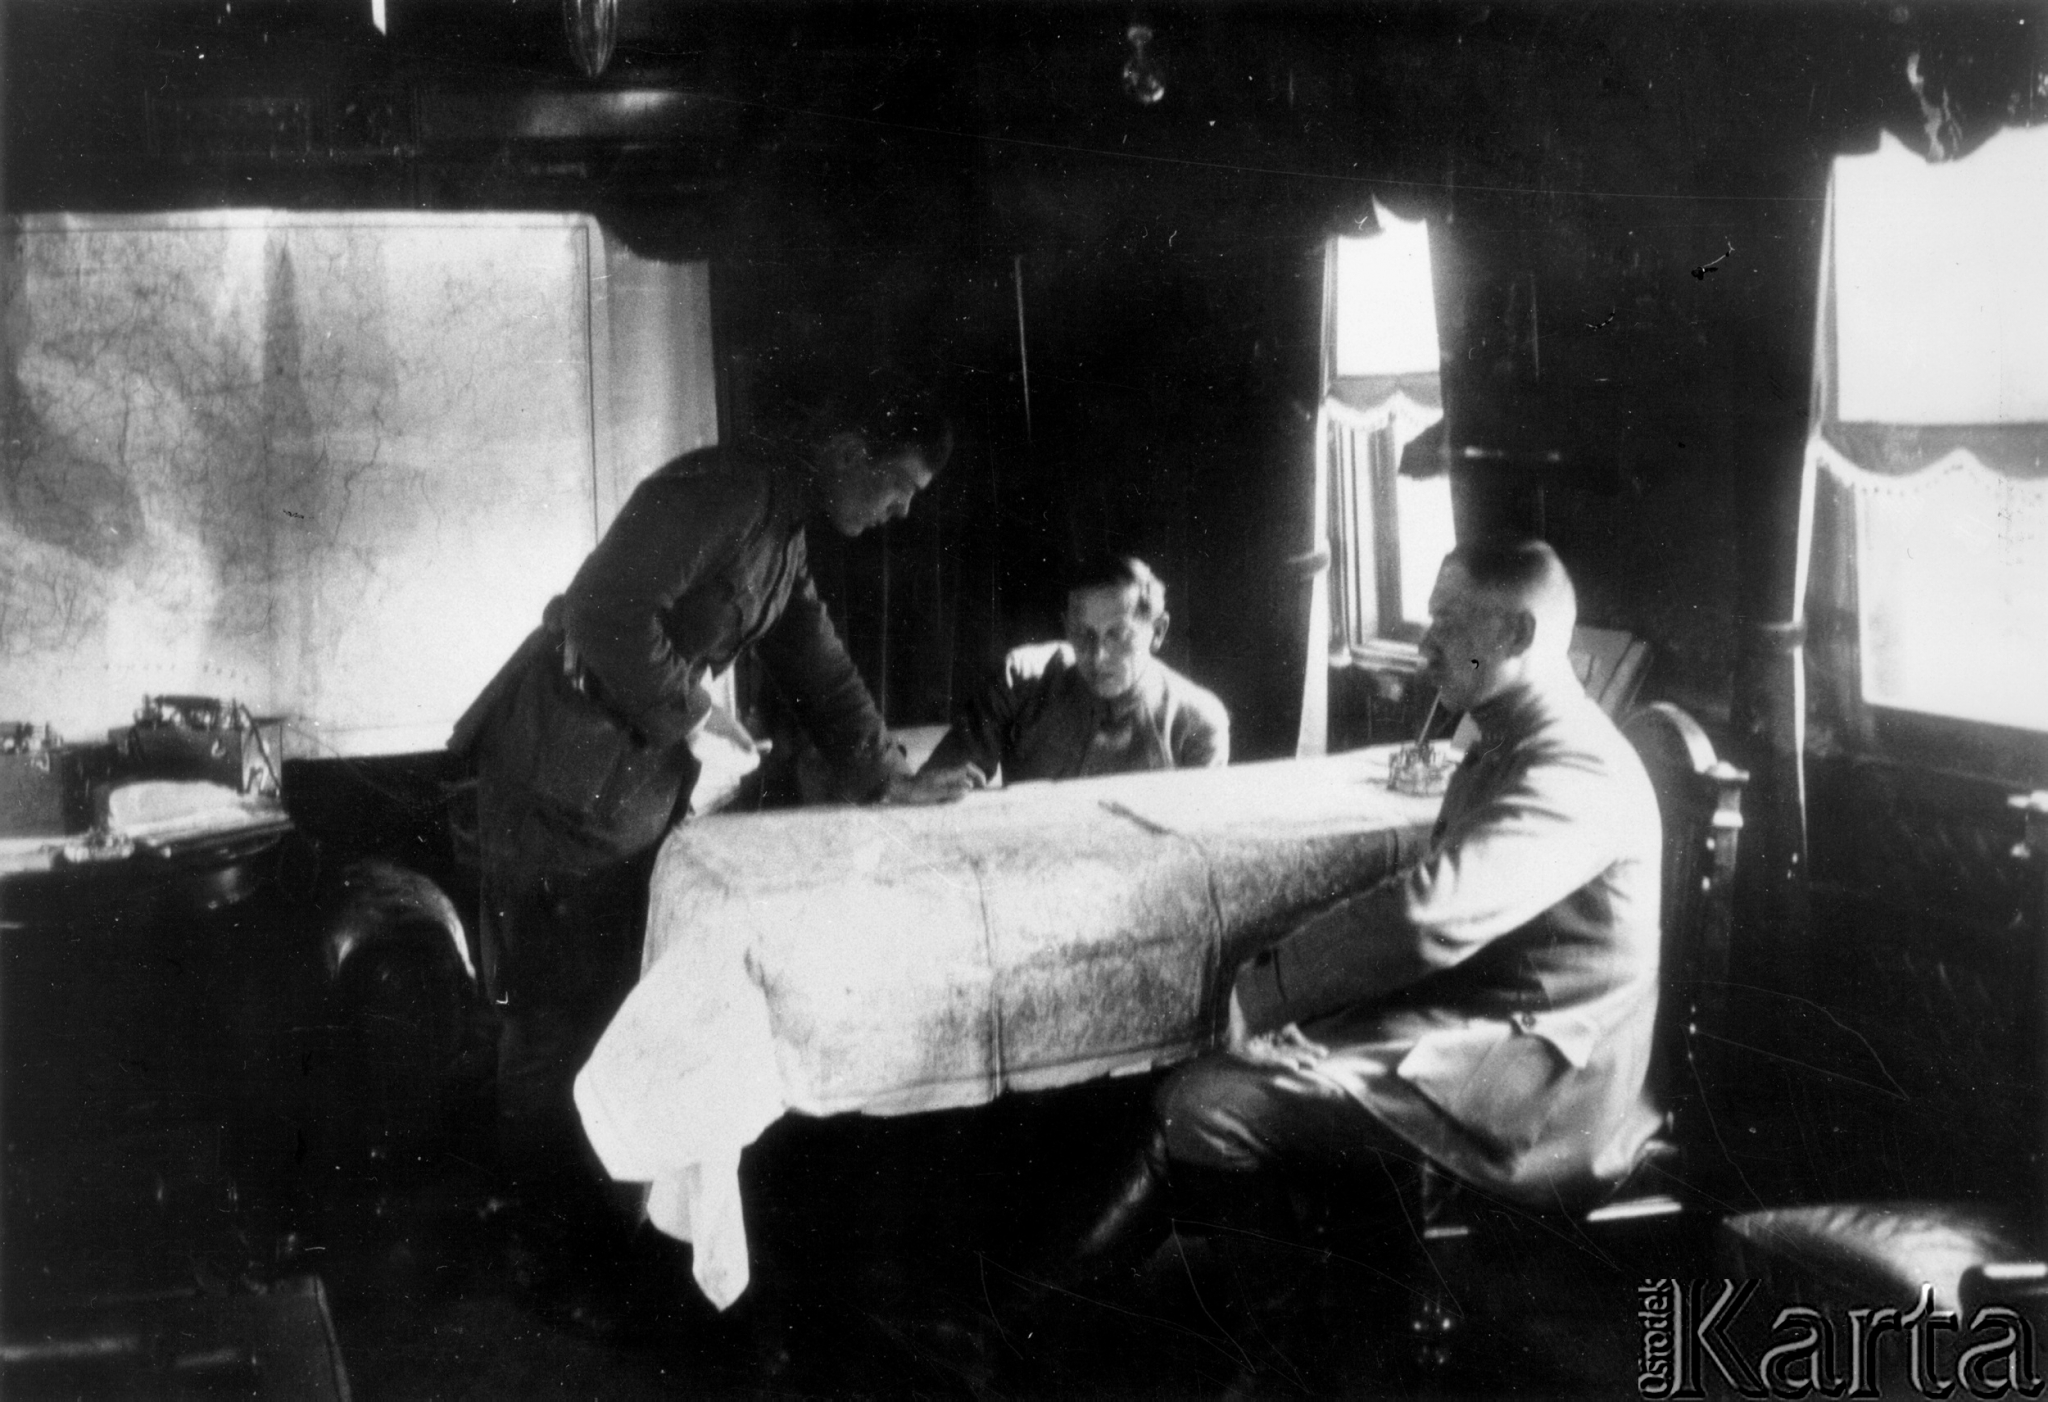 Tarnopol (Ukraina), wiosna 1920 rok. Ataman Semen Petlura (siedzi w środku) w salonce, będącej siedzibą jego sztabu podczas wojny polsko-bolszewickiej. Źródło: Laub /Ośrodek KARTA